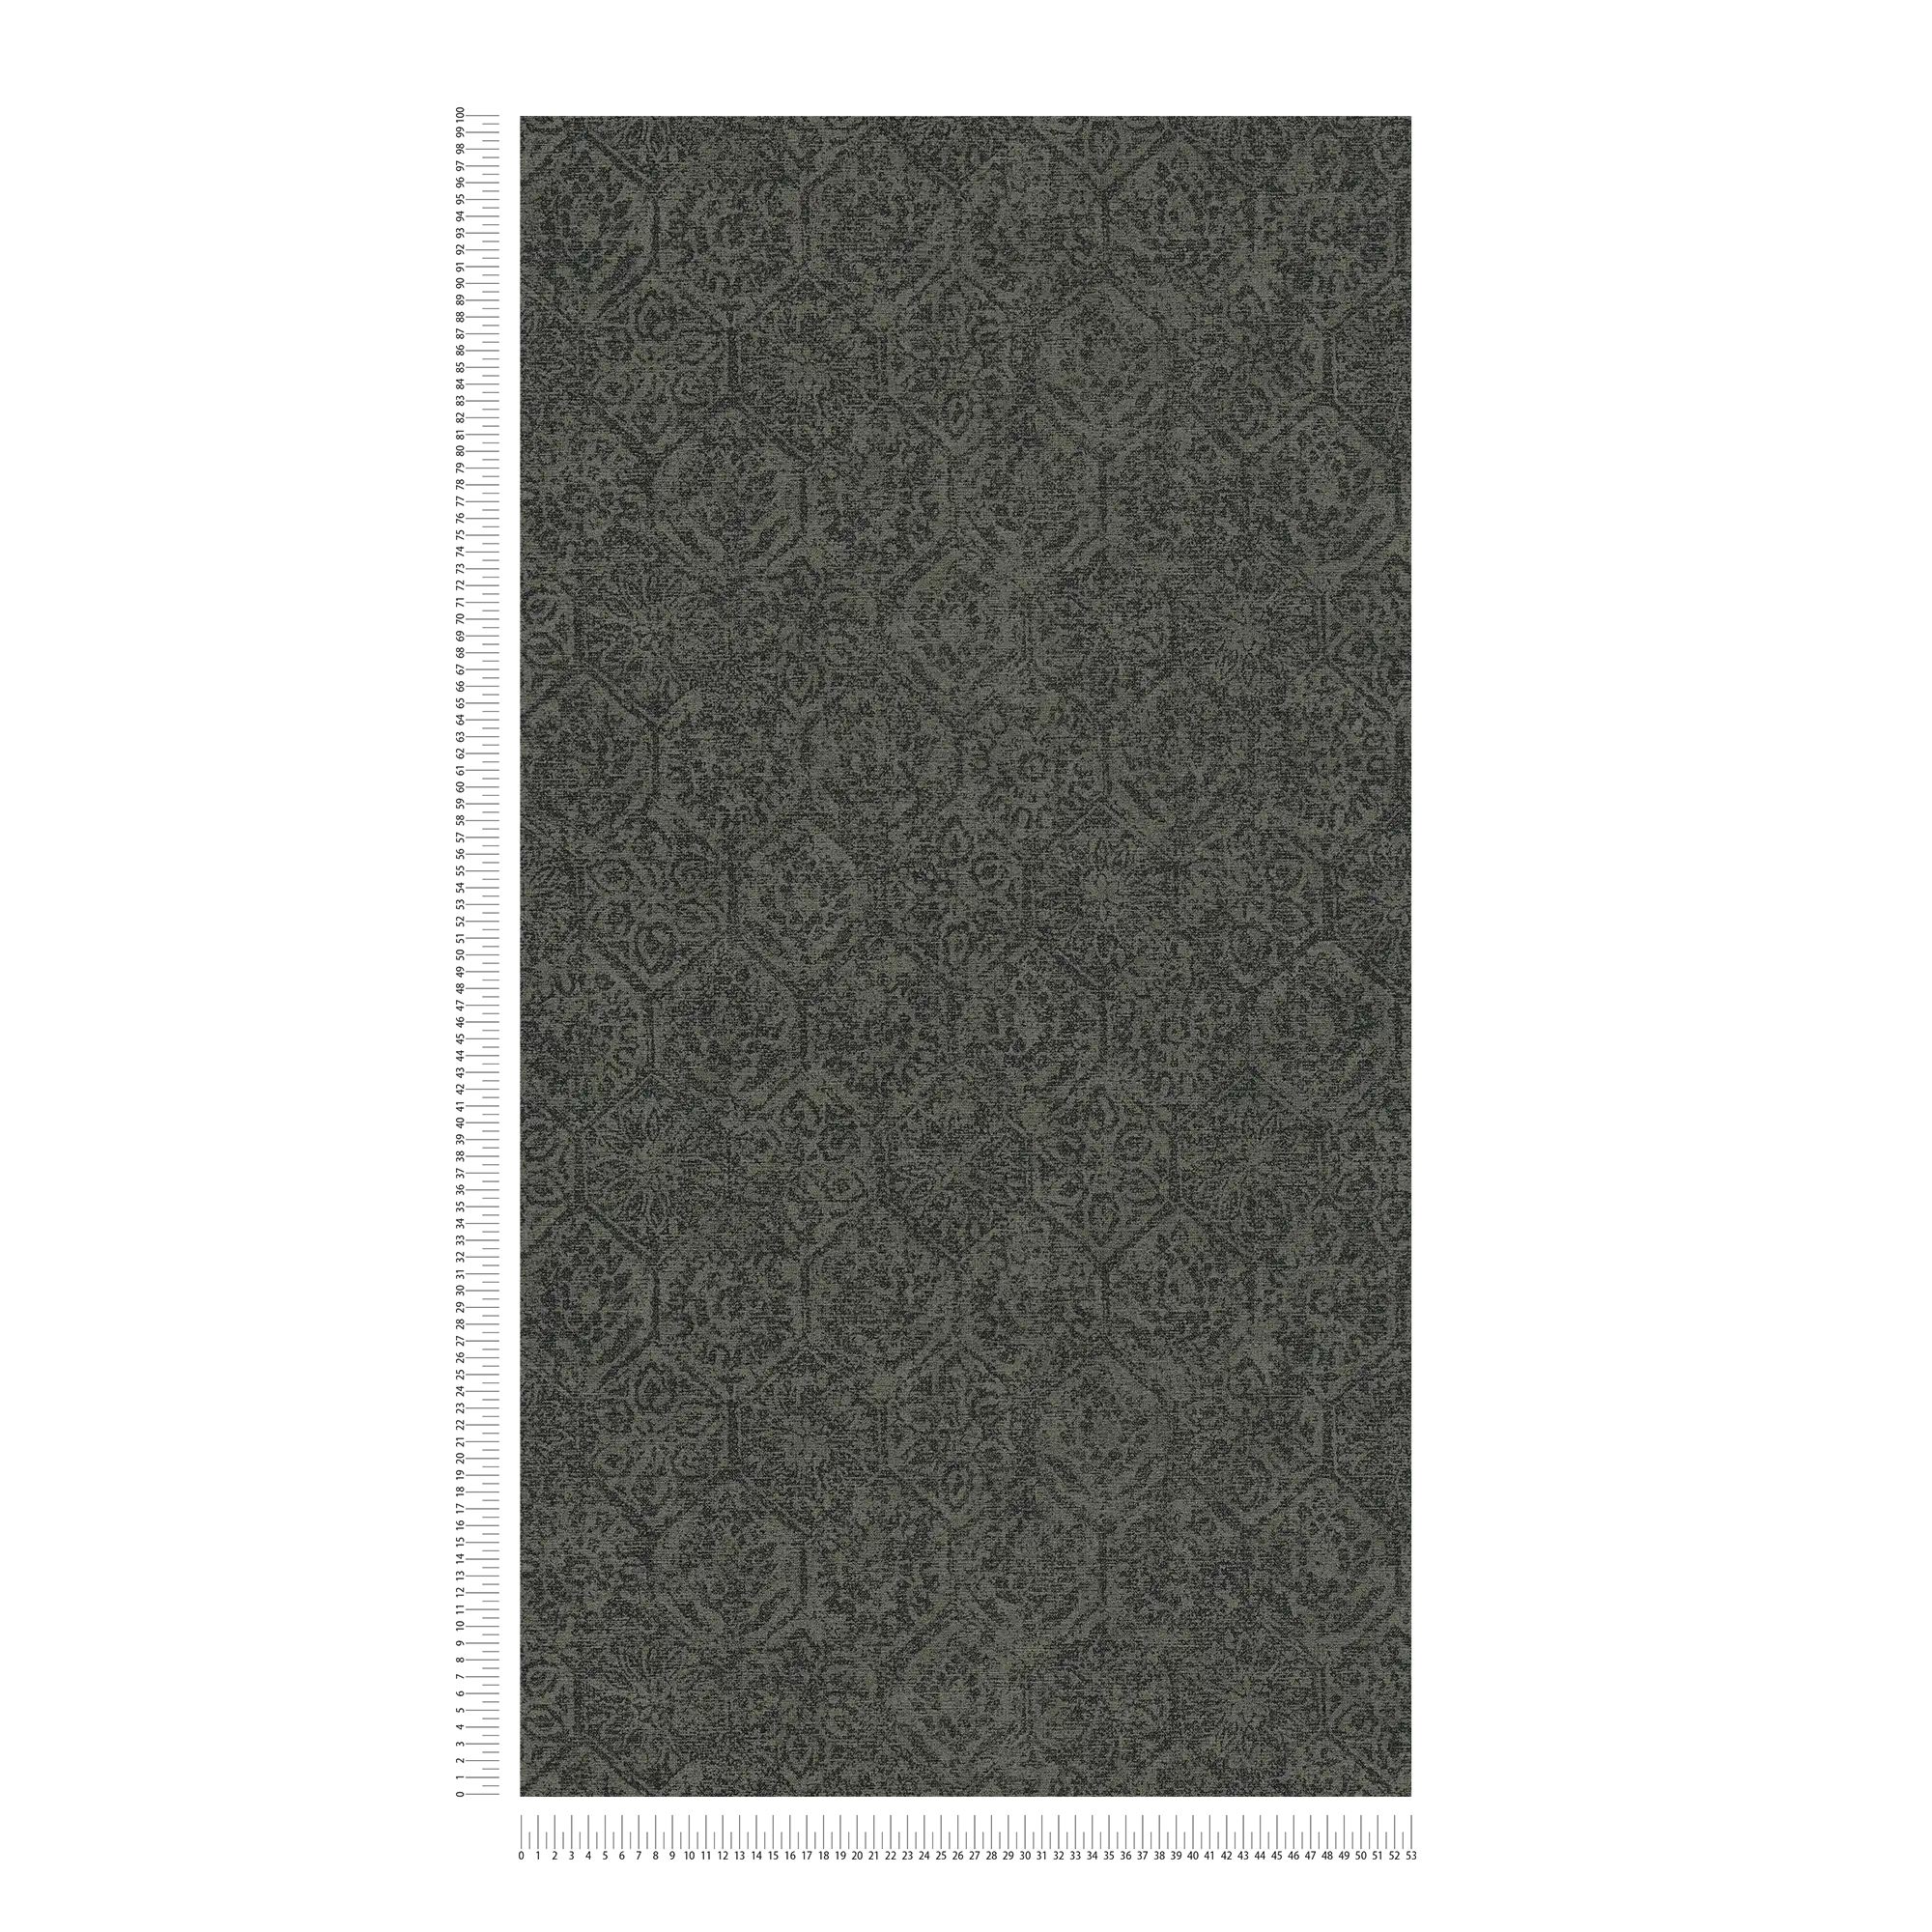             carta da parati con motivo vintage in stile floreale usato - grigio, nero
        